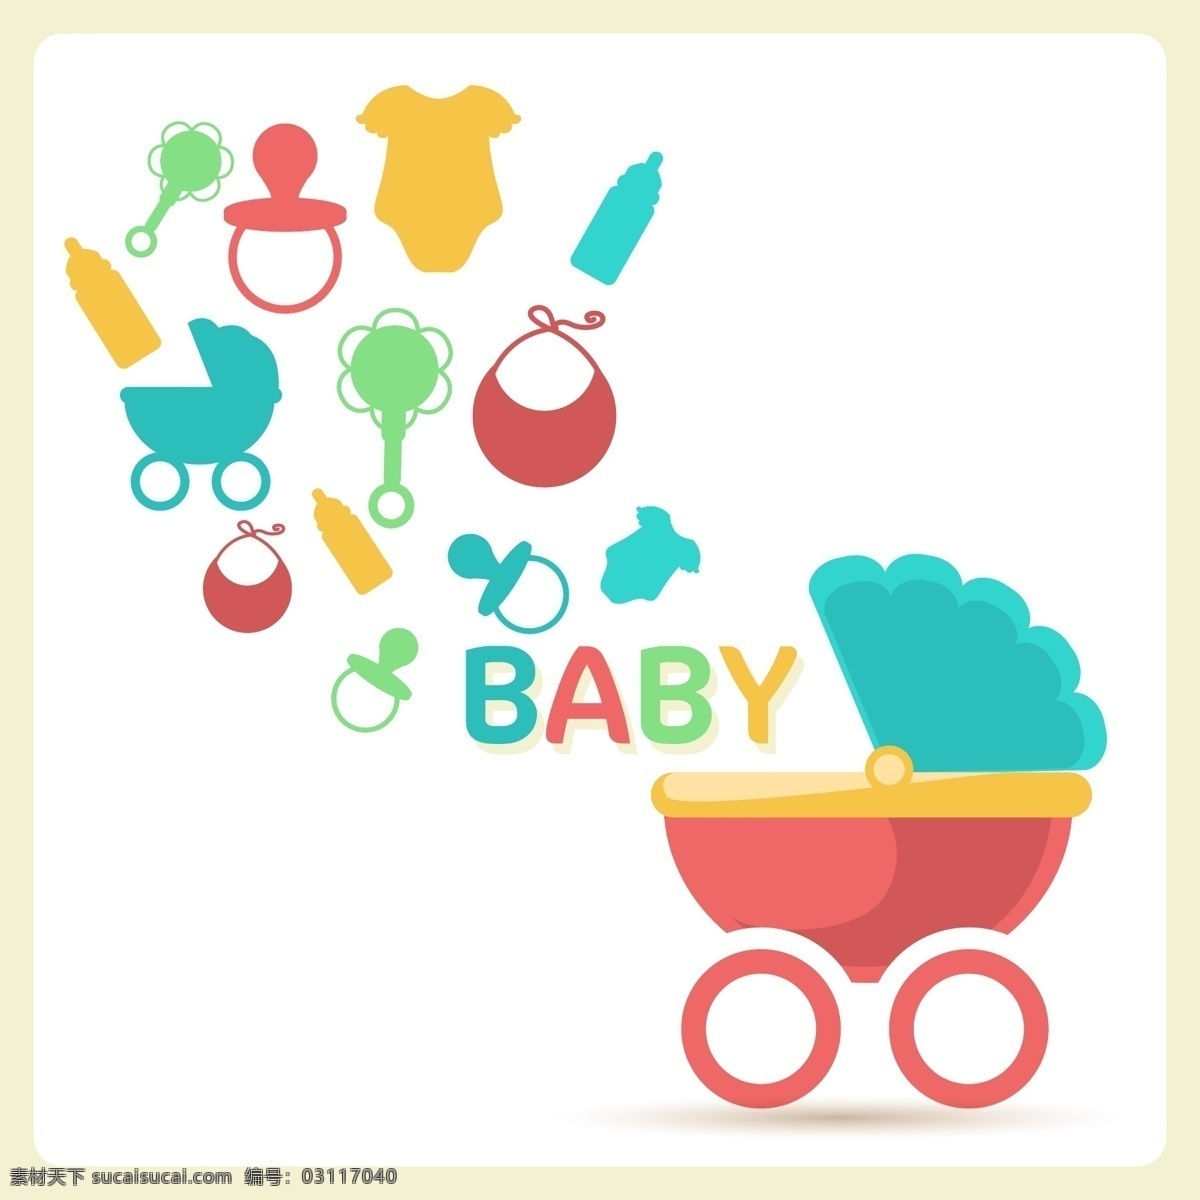 可爱 婴儿用品 婴儿车 矢量图 日常生活